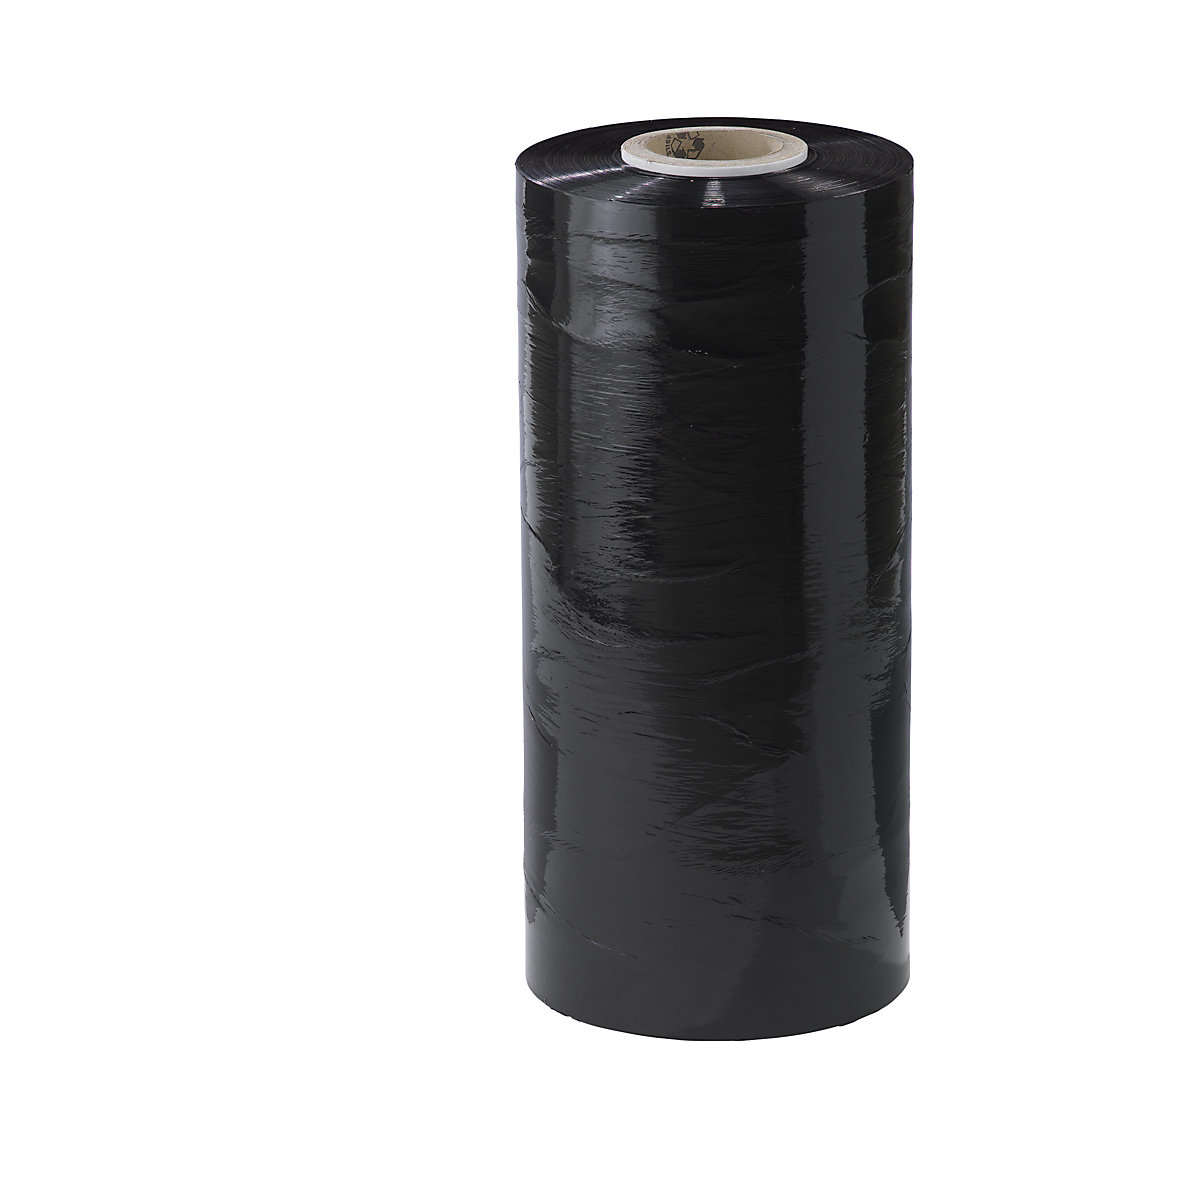 Film estirable de PE para máquinas, anchura 500 mm, a partir de 1 UE, grosor de lámina 23 µm, UE 15 unid., en negro-2